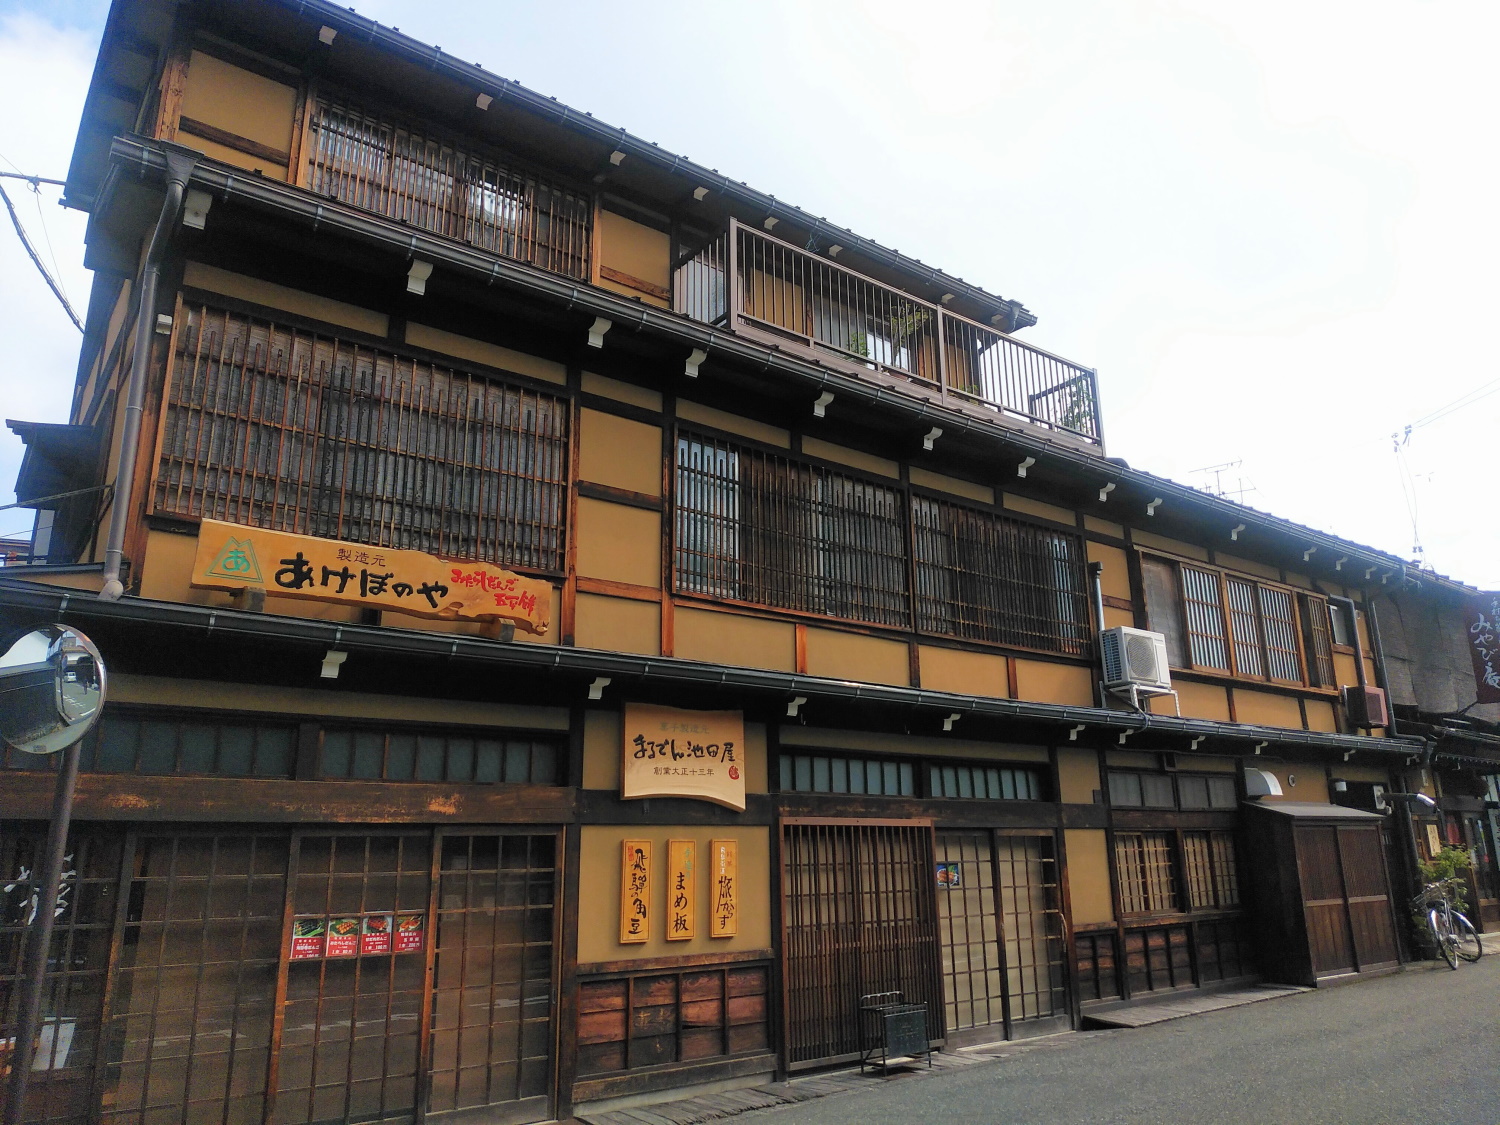 Guest House Furui Machinami